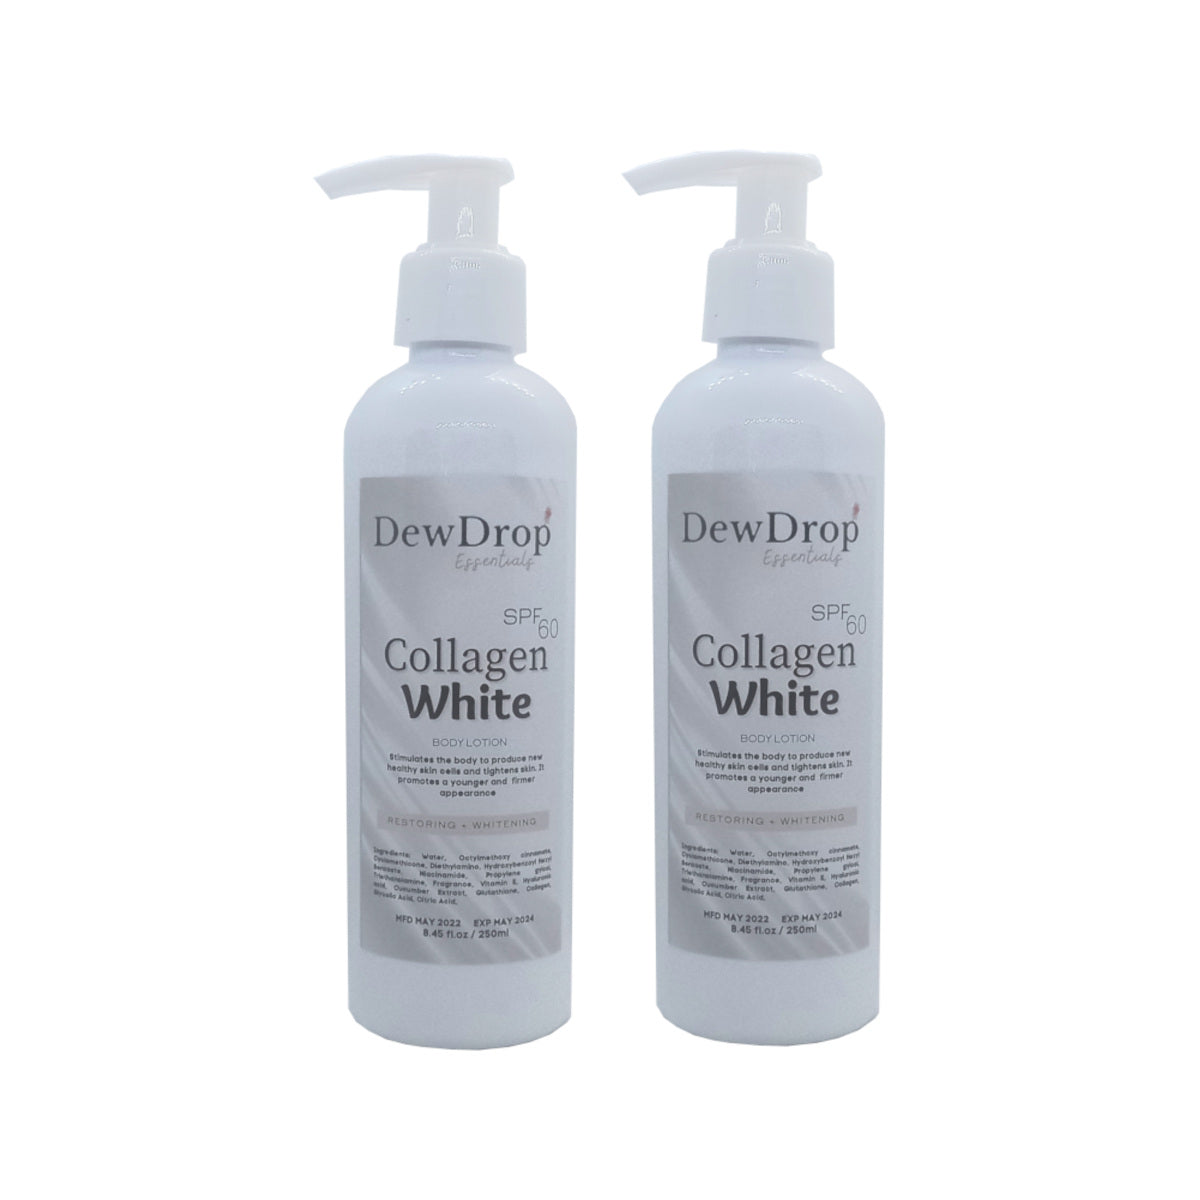 Dewdrop Collagen Whitening Body Lotion | Dewmart